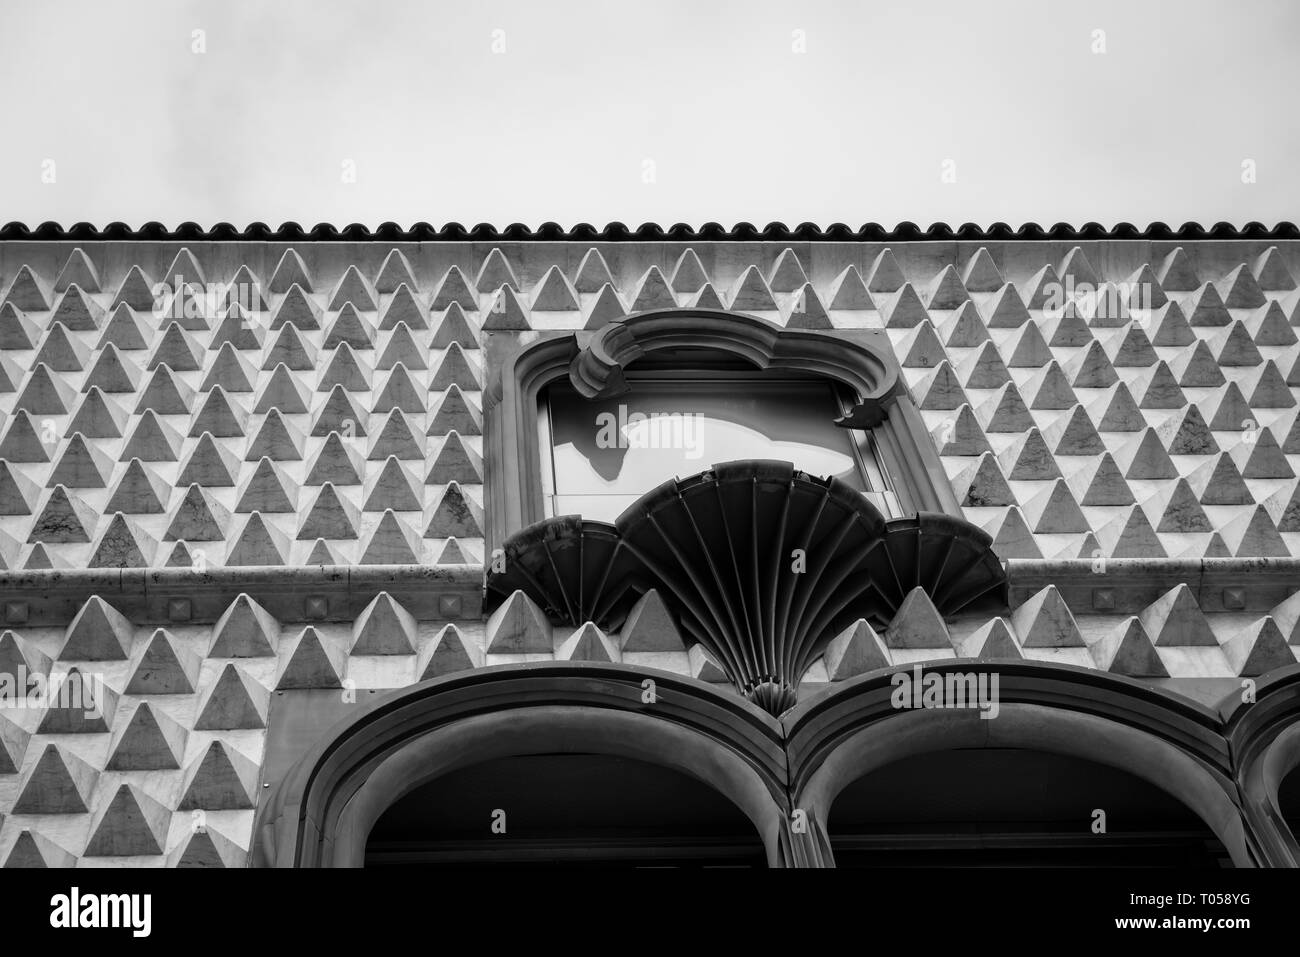 Die interessante Fassade der Casa Dos Bicos Literarische Museum, Lissabon, Portugal Stockfoto